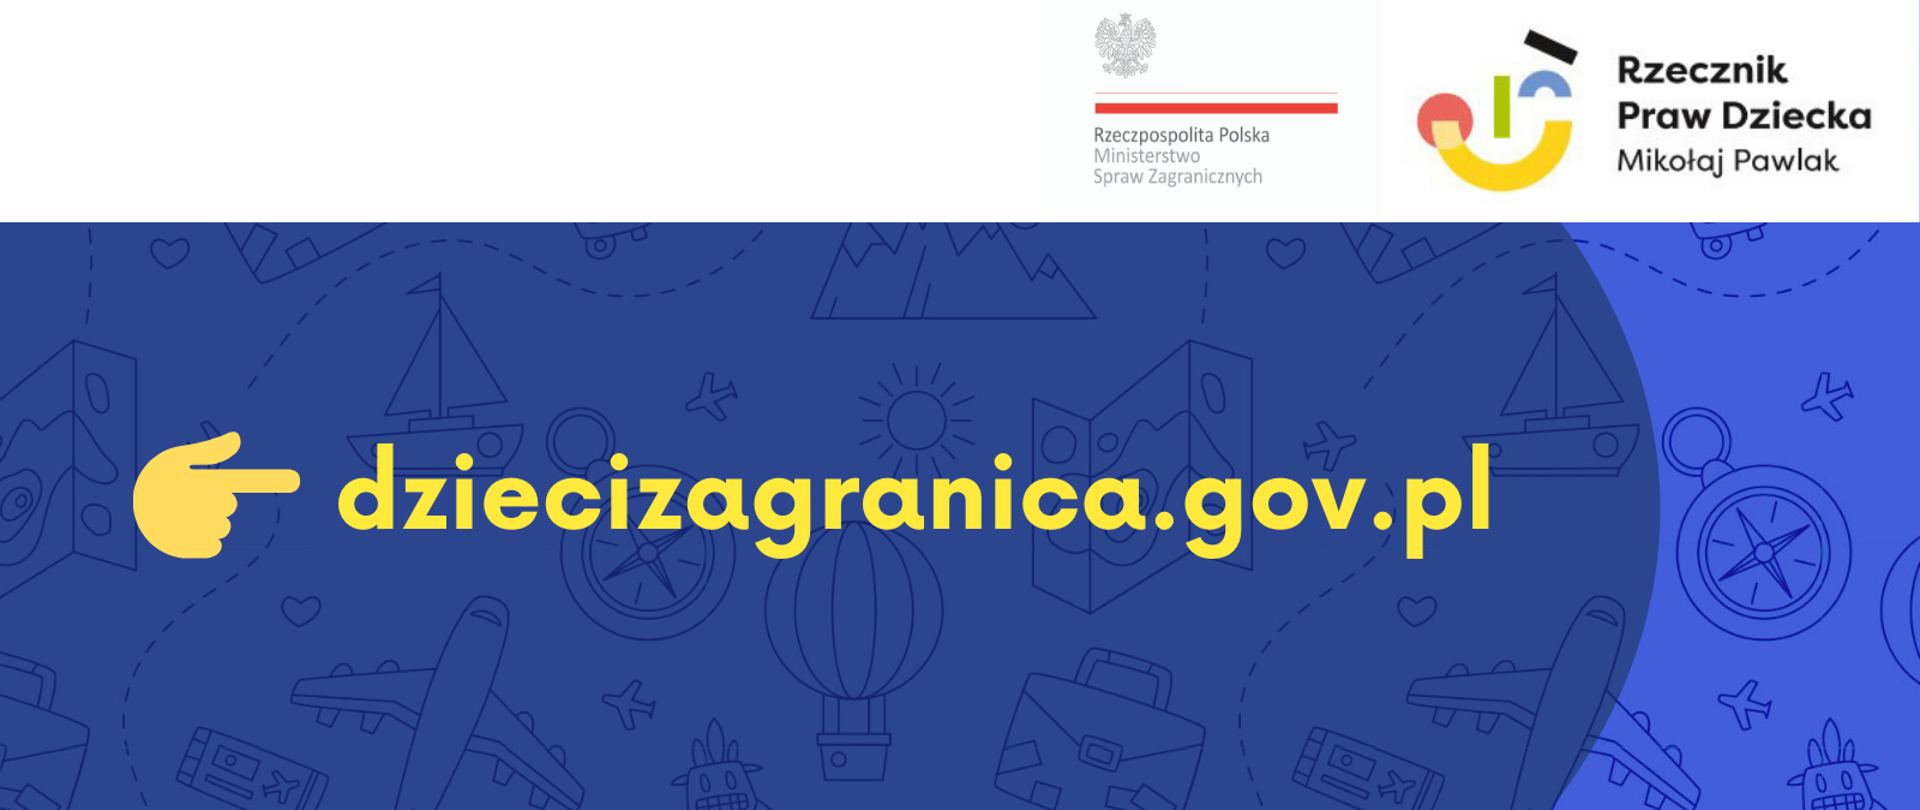 Ruszyła strona internetowa dziecizagranica.gov.pl